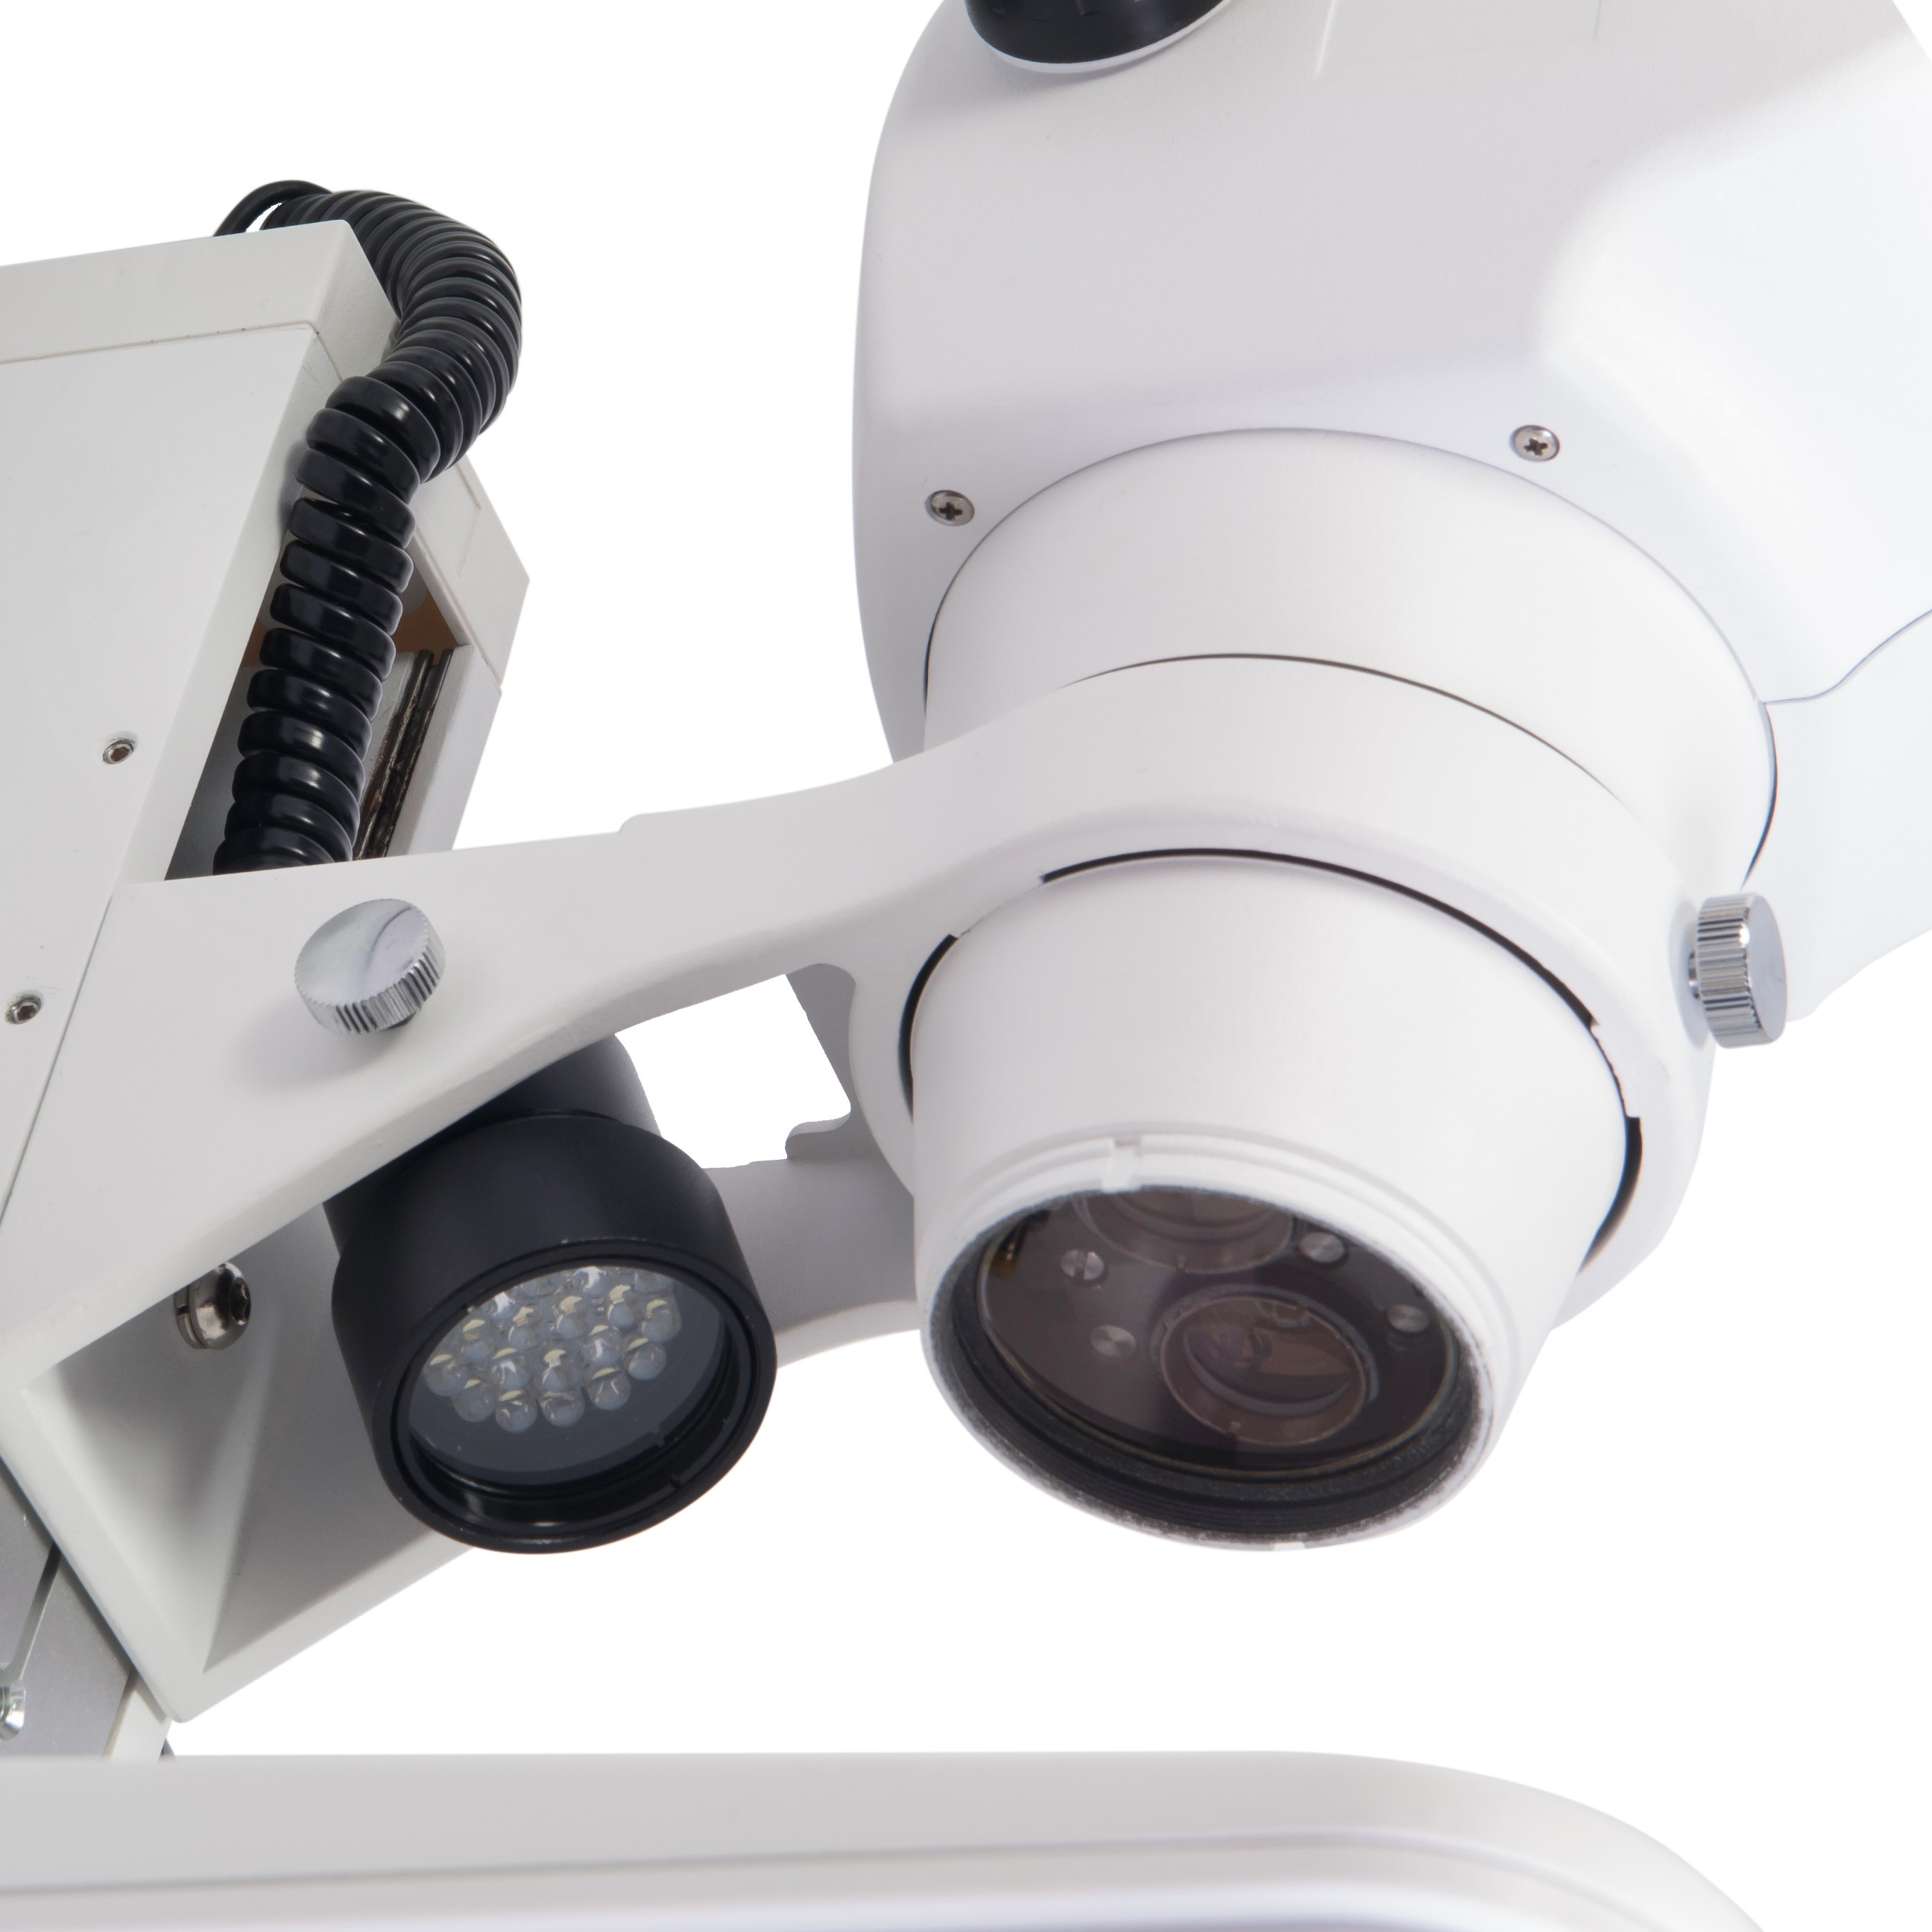 Микроскоп стерео Микромед МС-5-ZOOM LED купить по оптимальной цене,  доставка по России, гарантия качества